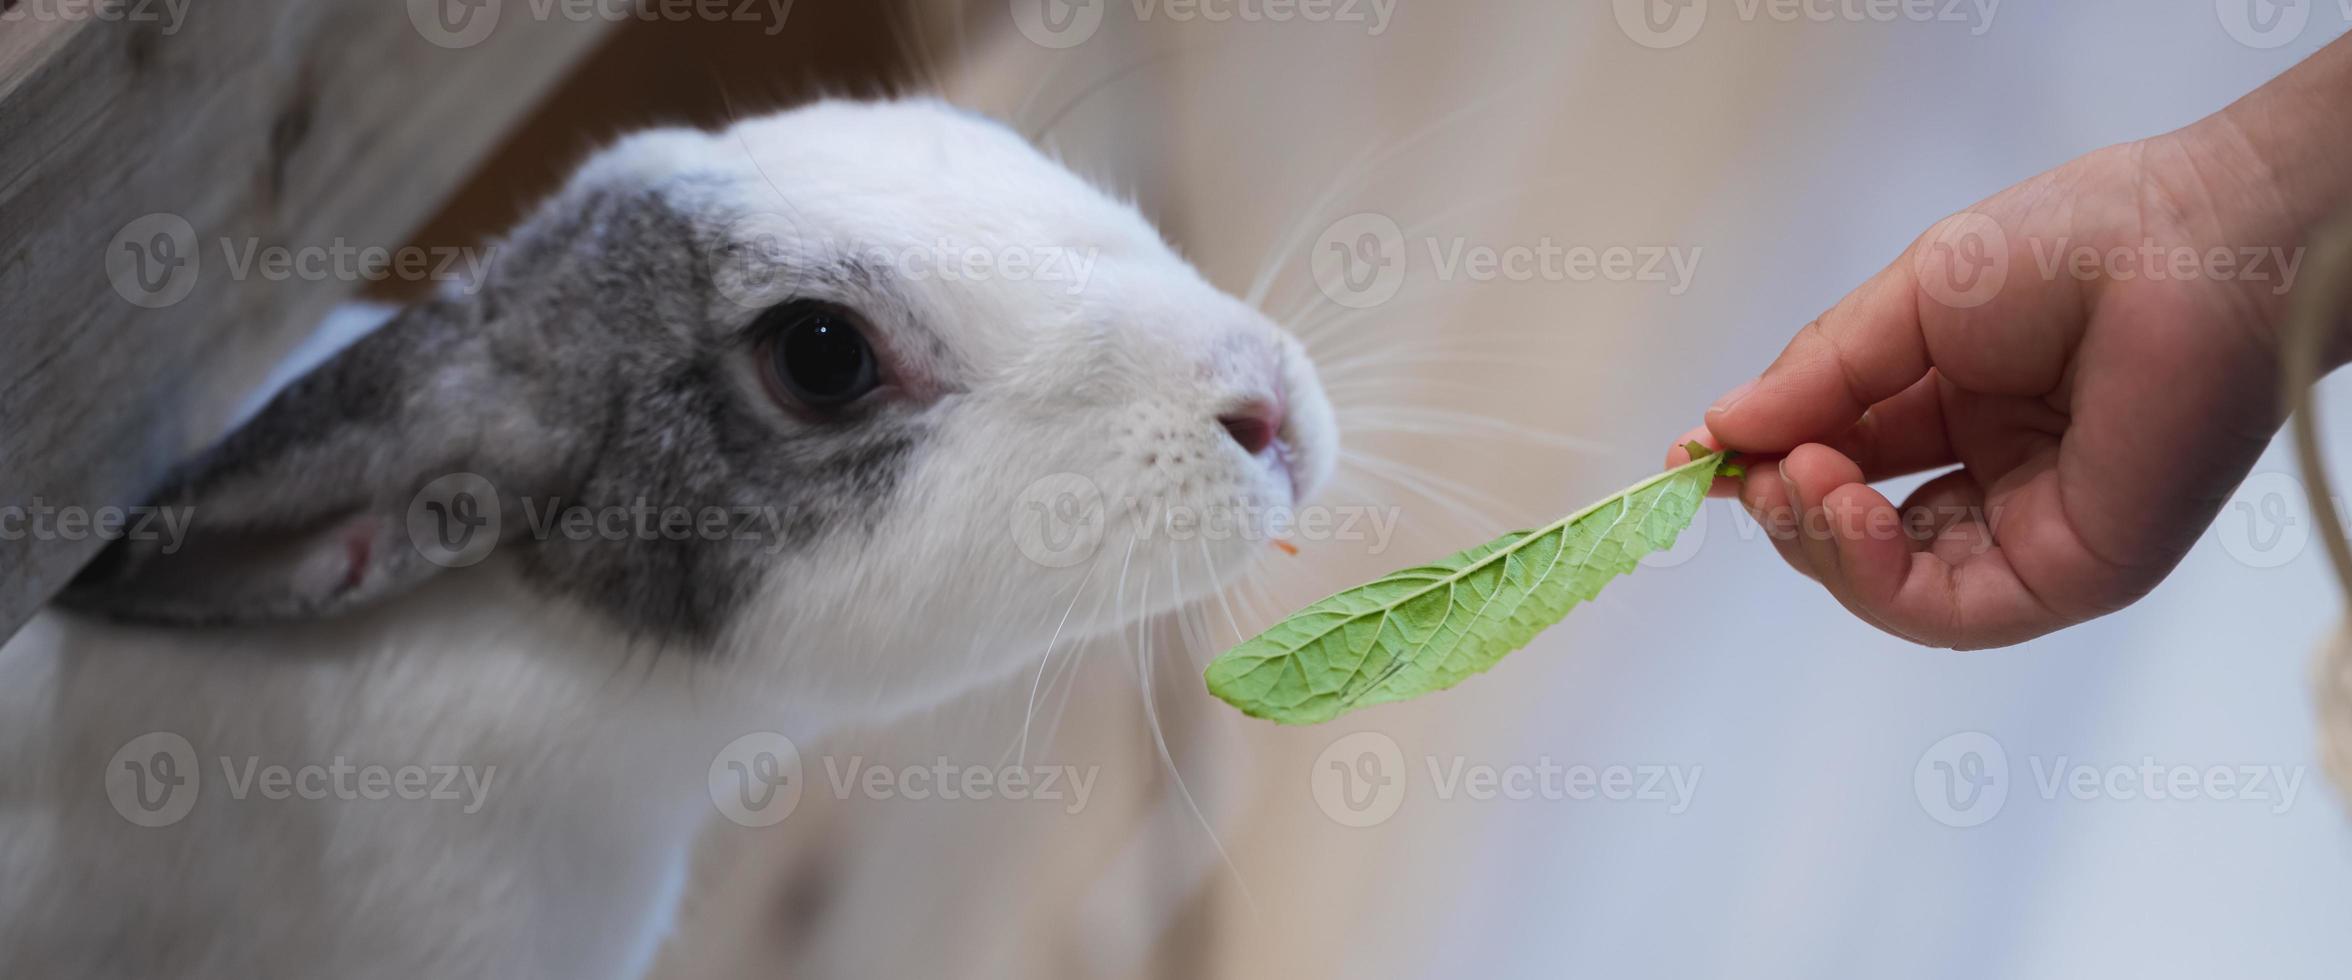 weinig konijn was snuiven zoet basilicum bladeren dat menselijk hand- was geven het naar eten. huisdieren zijn in kooien. foto